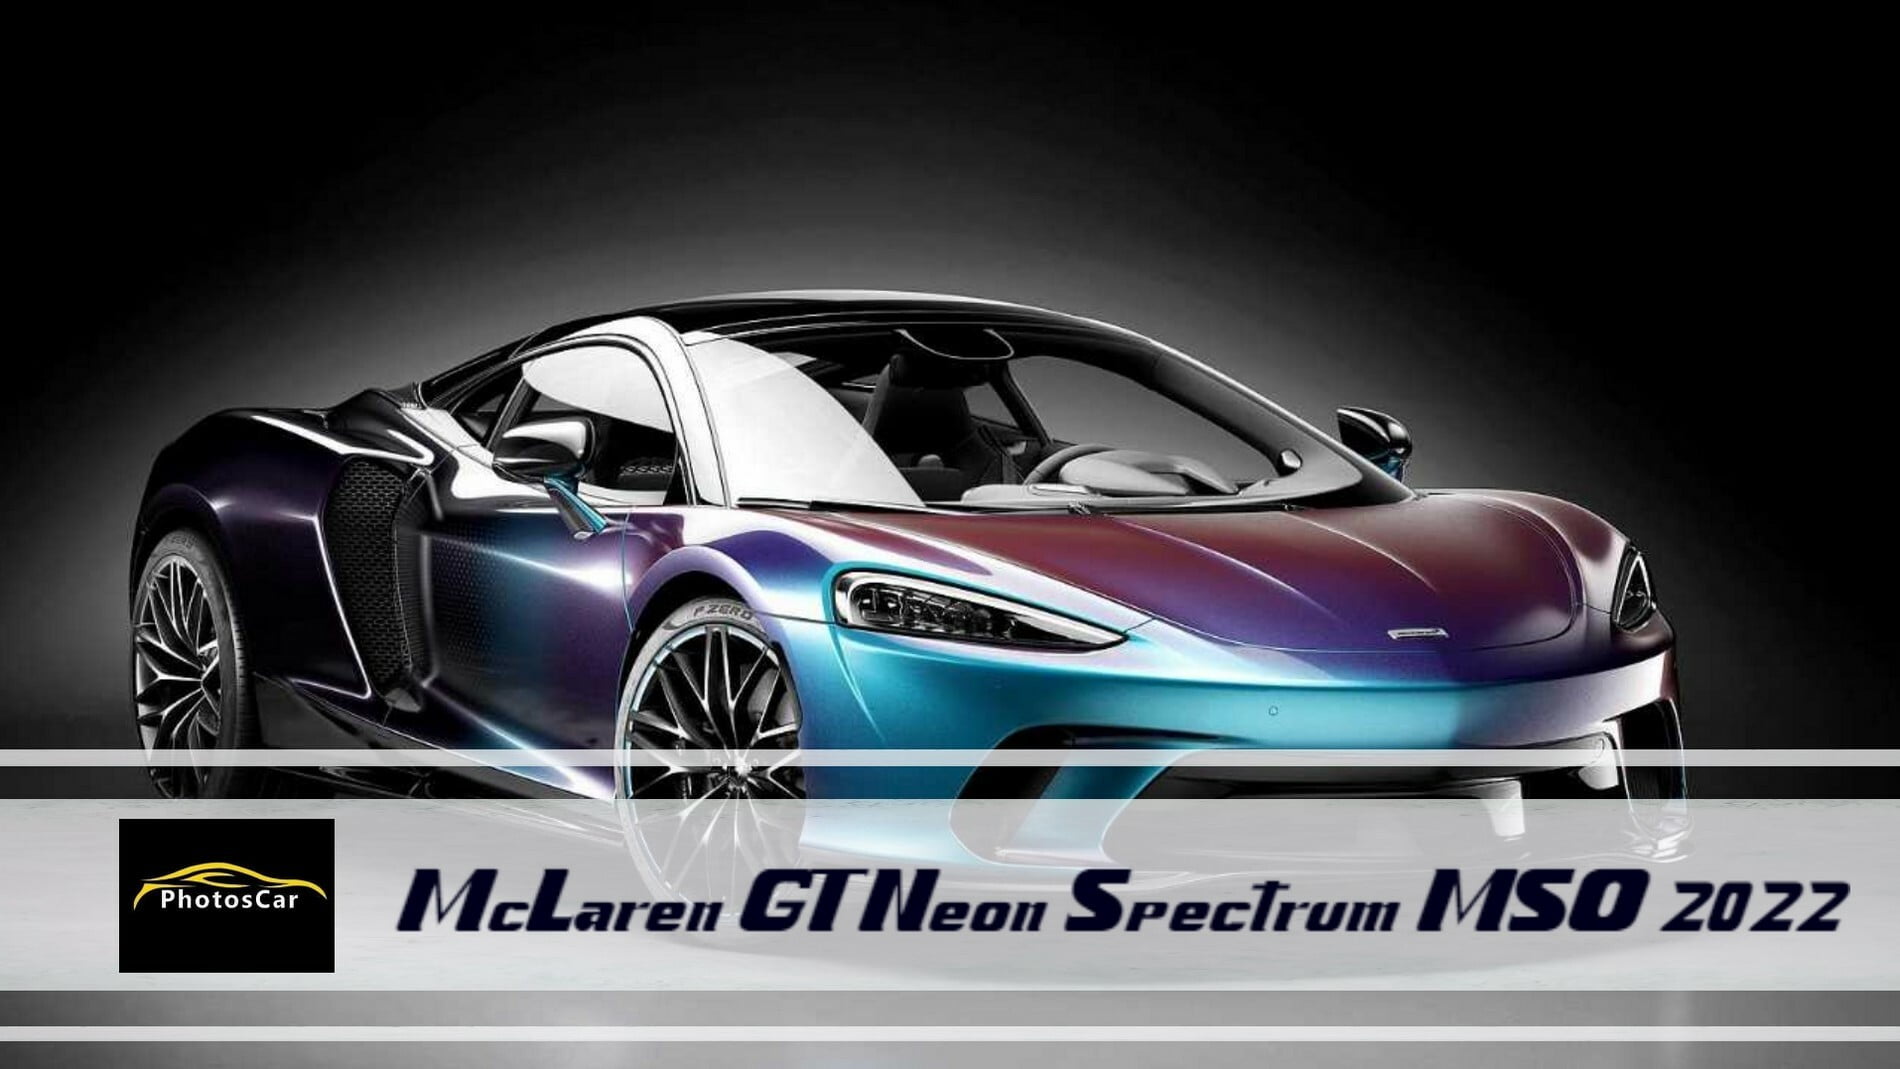 McLaren GT Neon Spectrum MSO 2022